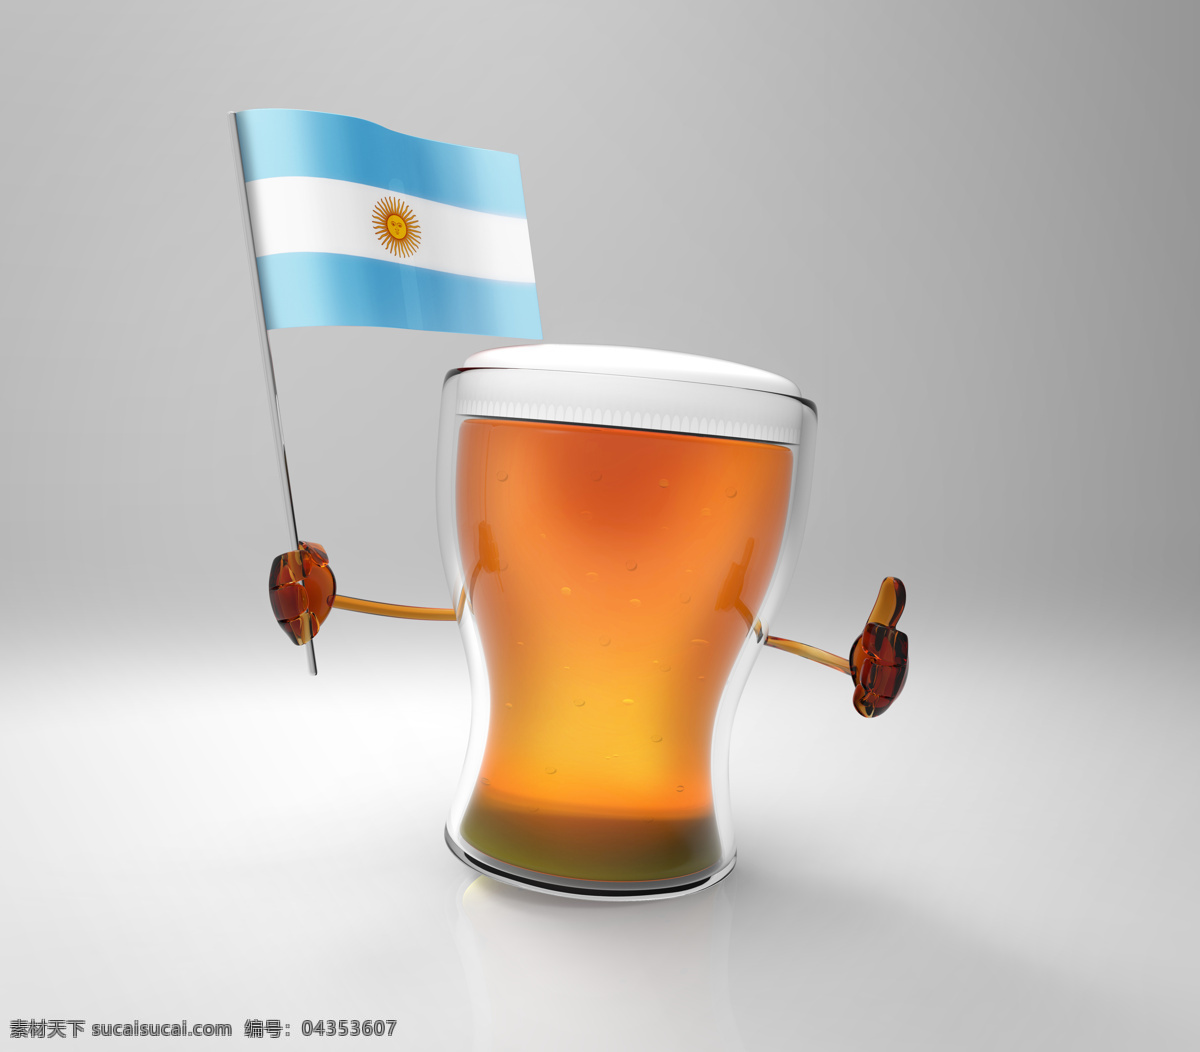 国旗 旗子 啤酒 餐厅美食 美味 饮料 阿根廷 阿根廷国旗 酒水饮料 餐饮美食 灰色